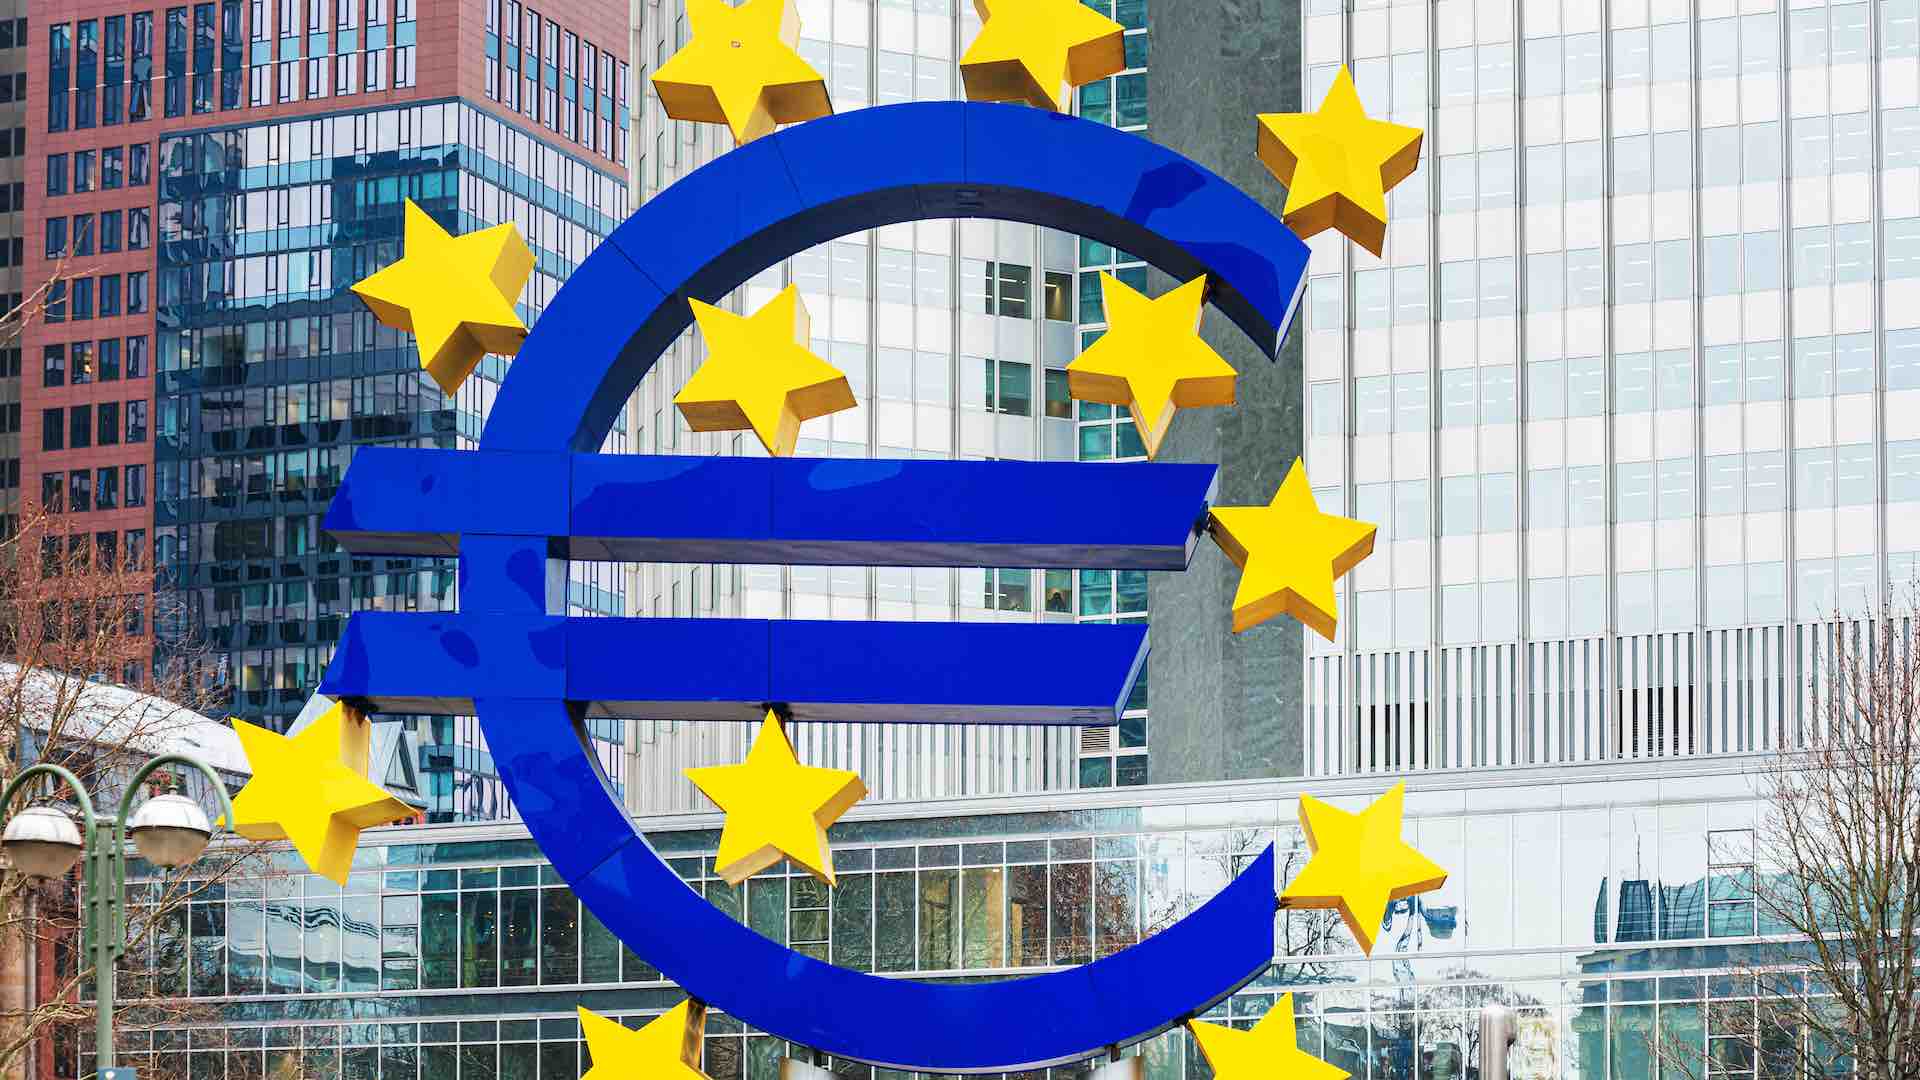 Avrupa pazarları mücadele ediyor; Barclays'in karı yüzde 7 arttı